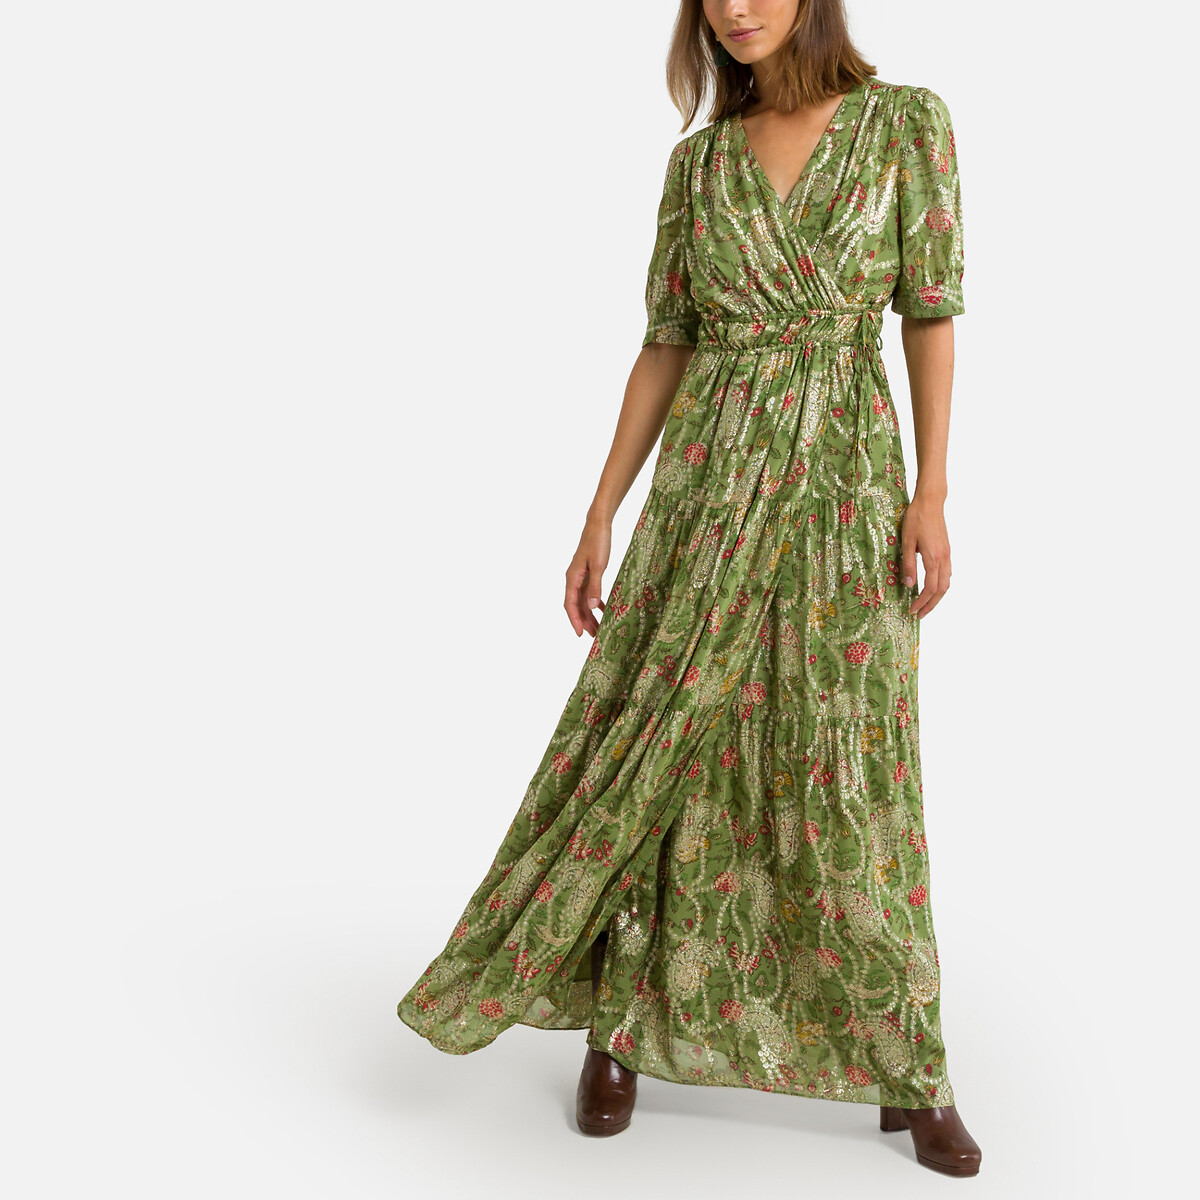 Платье с запахом длинное короткие рукава RUBI 1(S) зеленый платье длинное расклешенное короткие рукава с напуском 42 синий